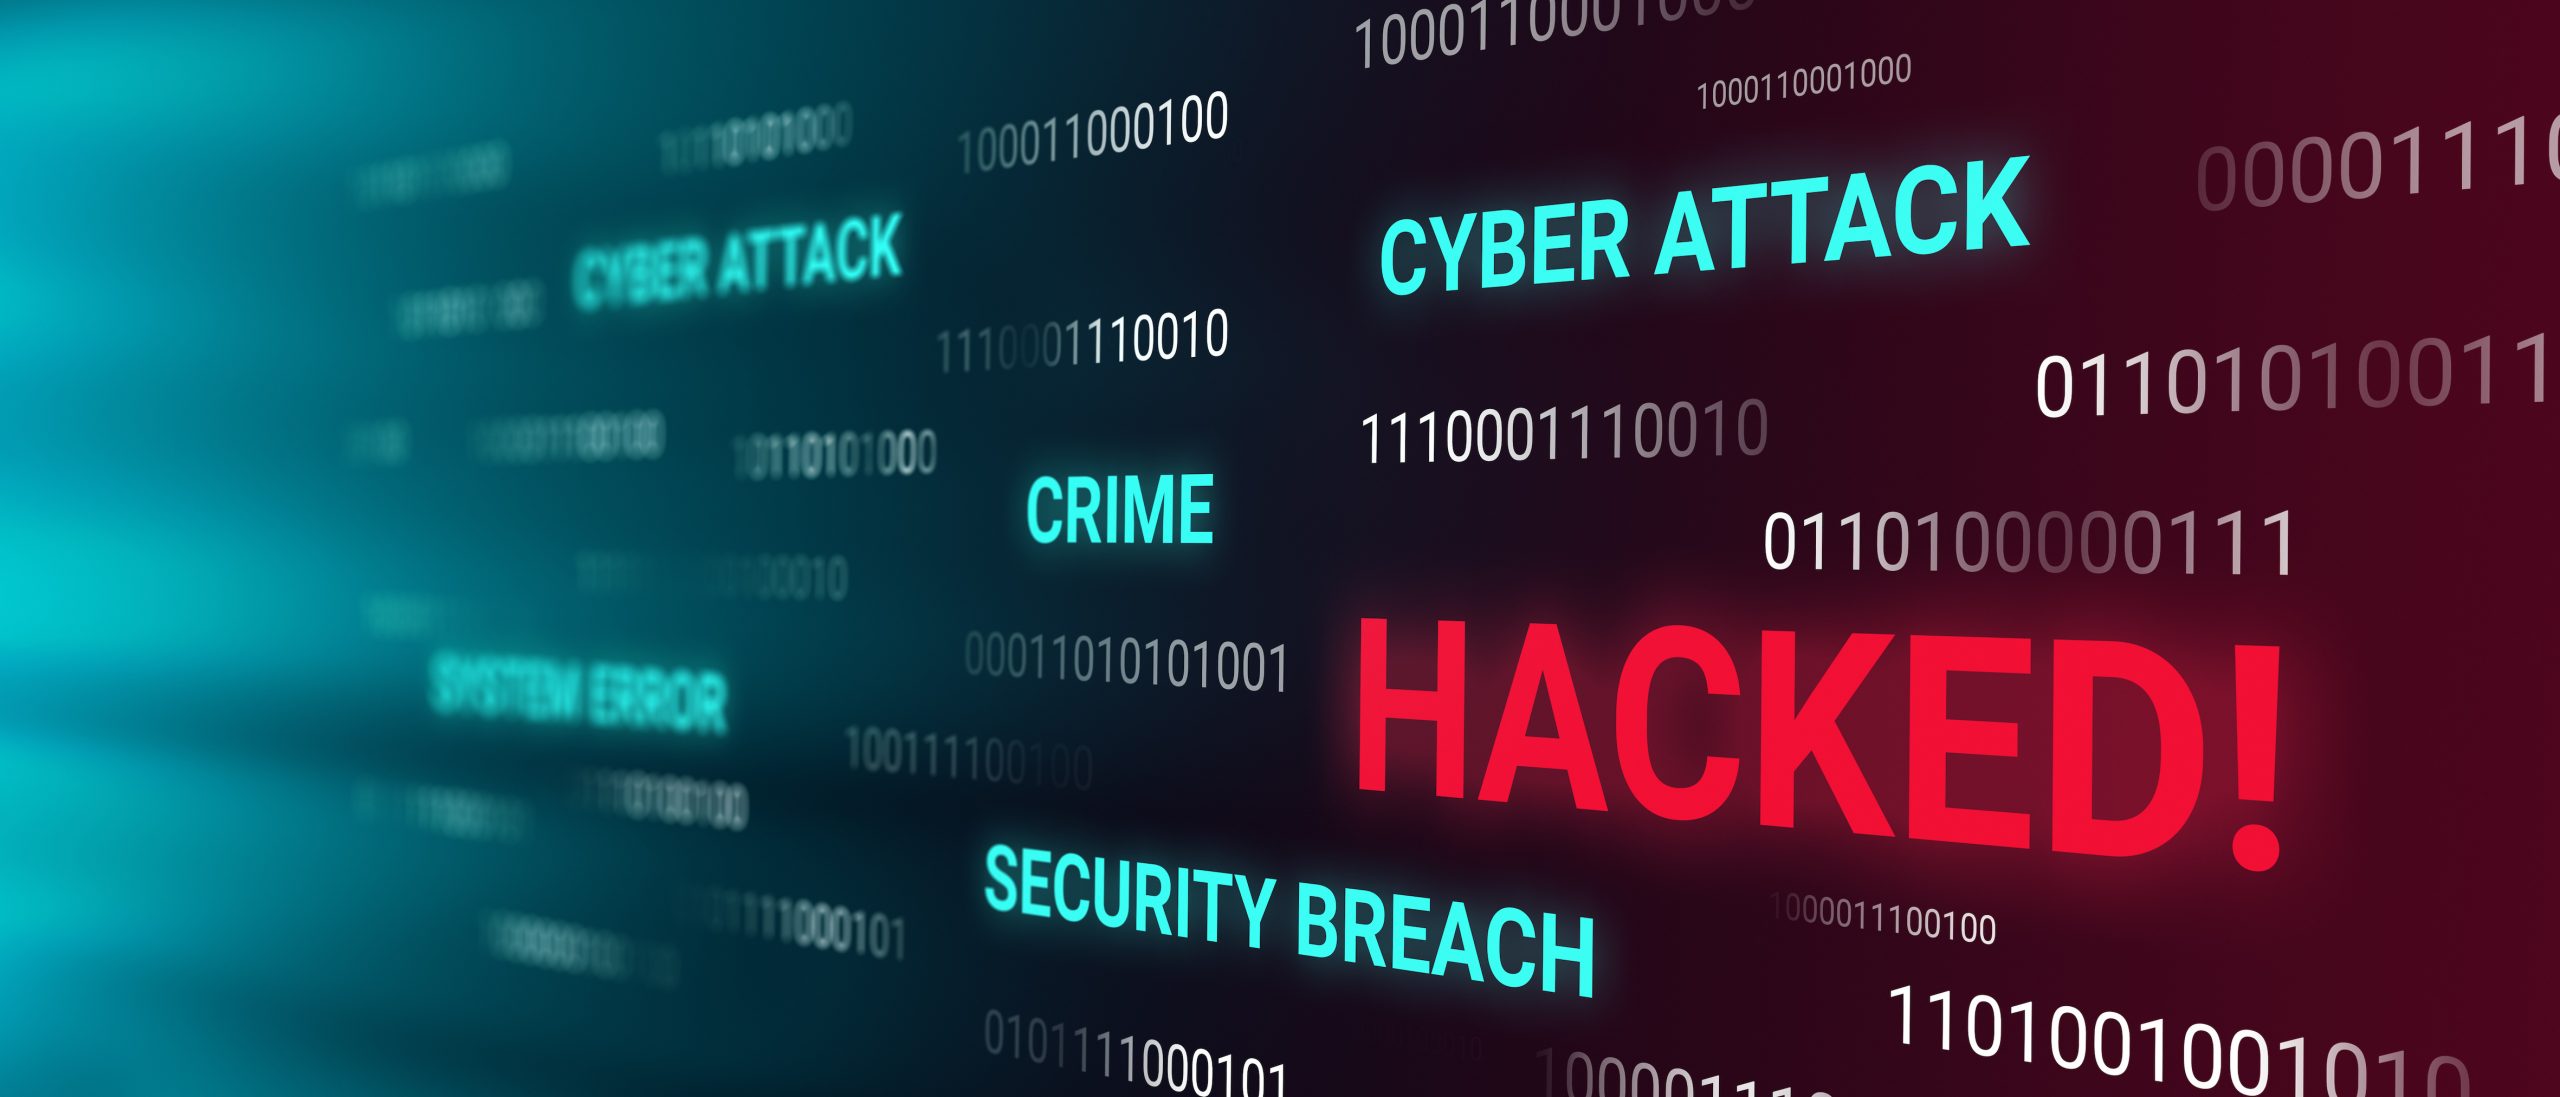 Hackerangriffe auf Onlineshops vermeiden, Shops updaten und Sicherheitslücken schliessen.